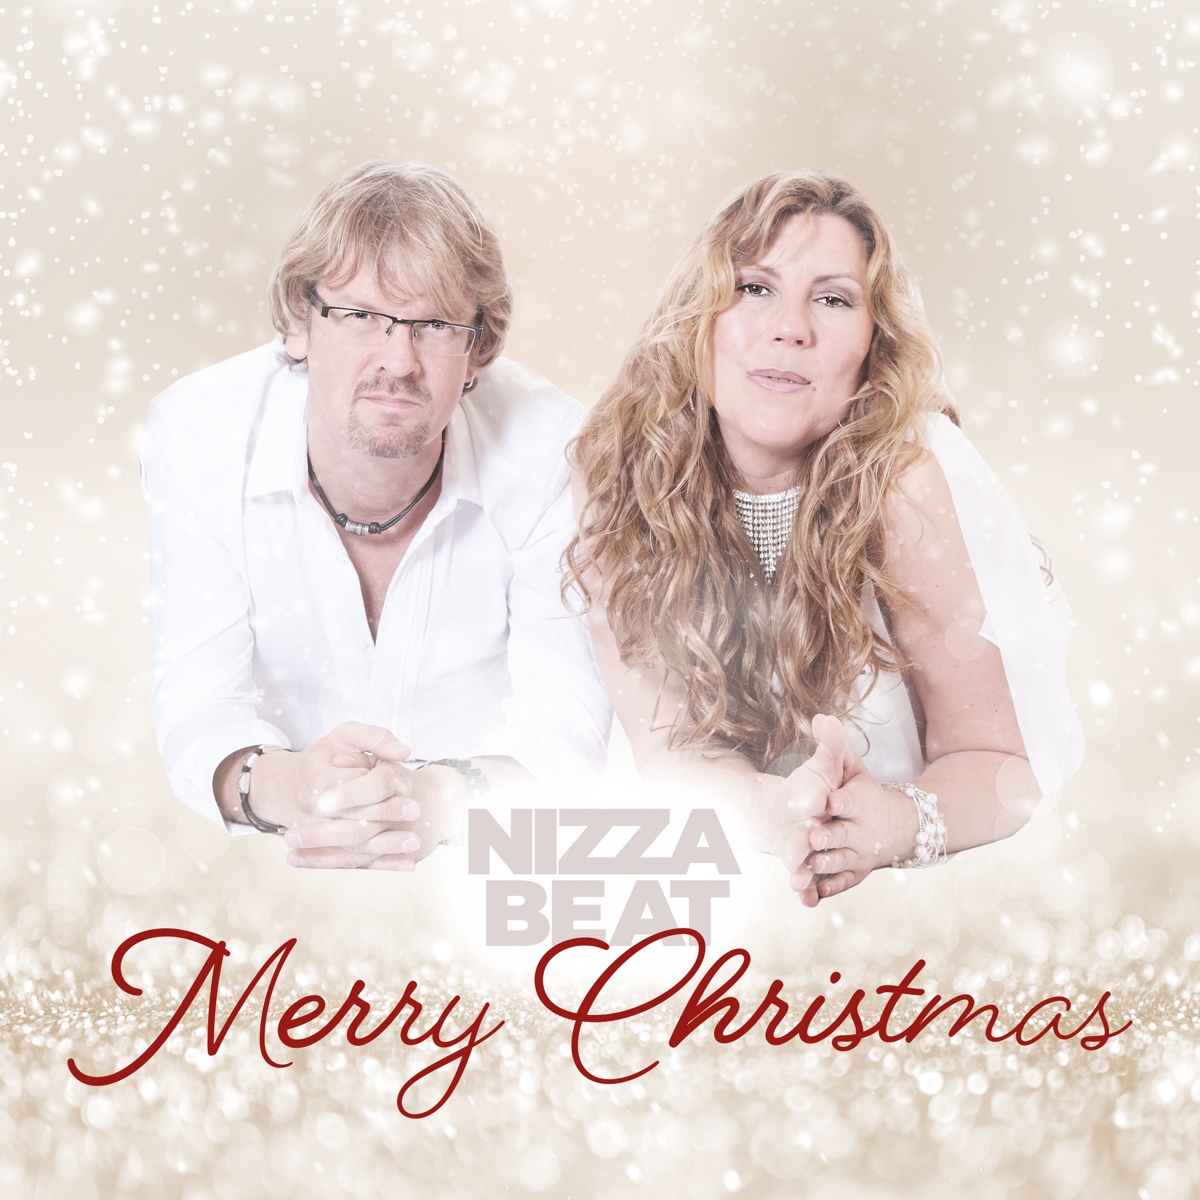 Merry Christmas die beste Weihnachtsstimmung für Dich. Der neue Song ist ein frische Mix aus Popschlager, Reggaeton und Weihnachtsmusik direkt von Nizzabeat aus Dortmund